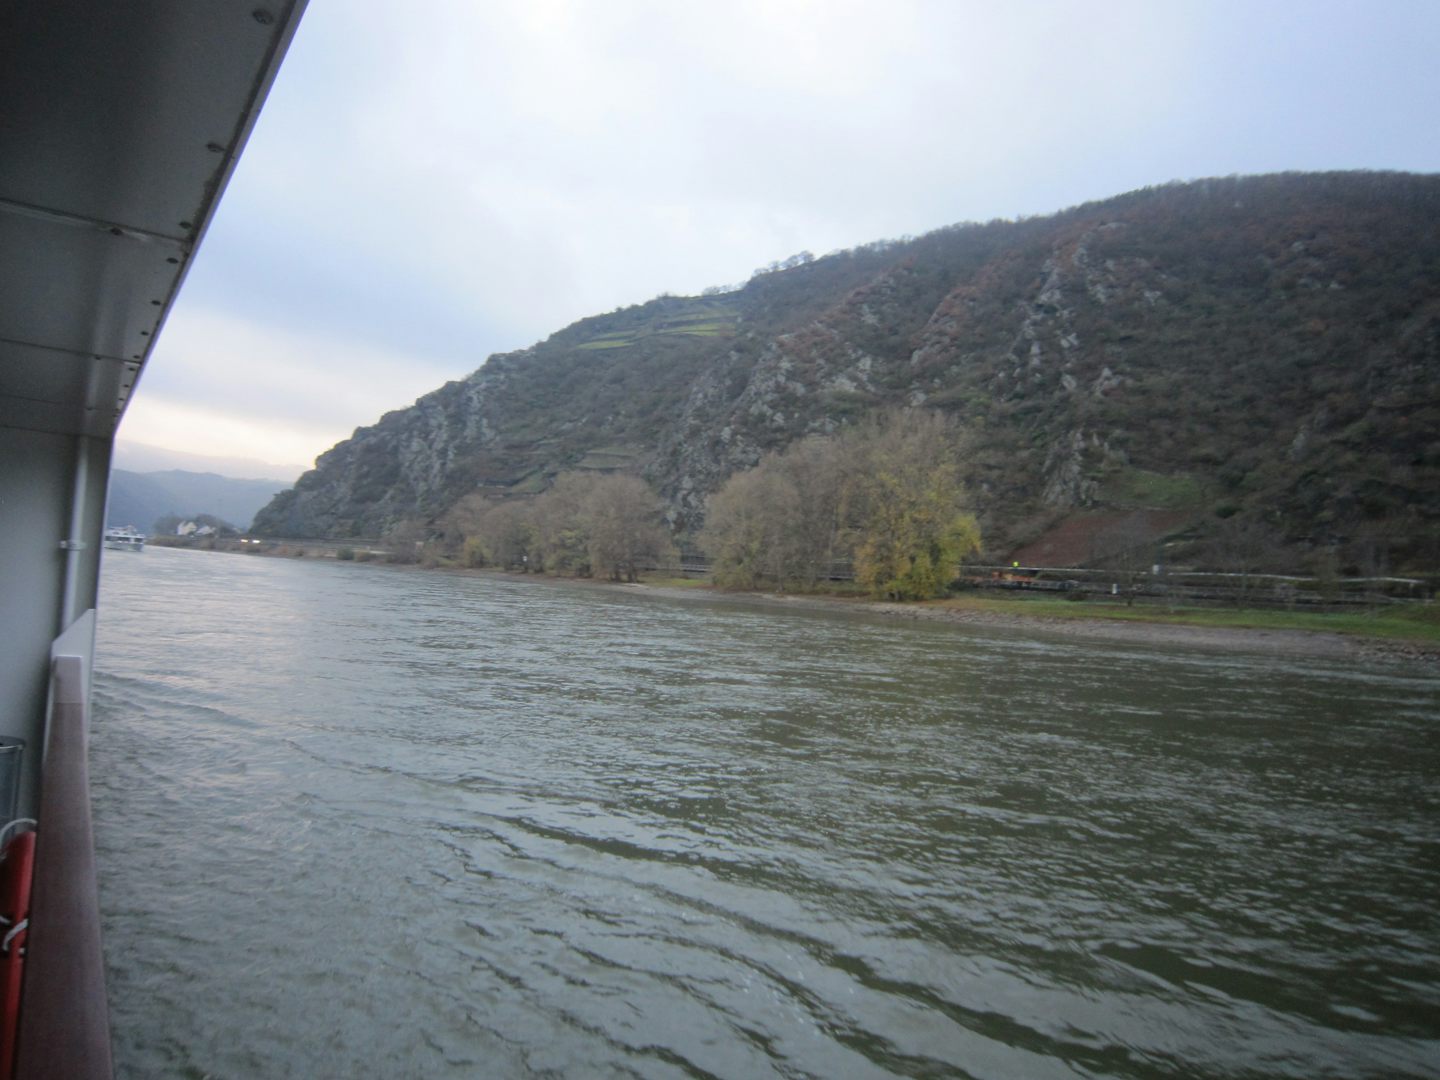 Lorelei Rock on the Rhine River